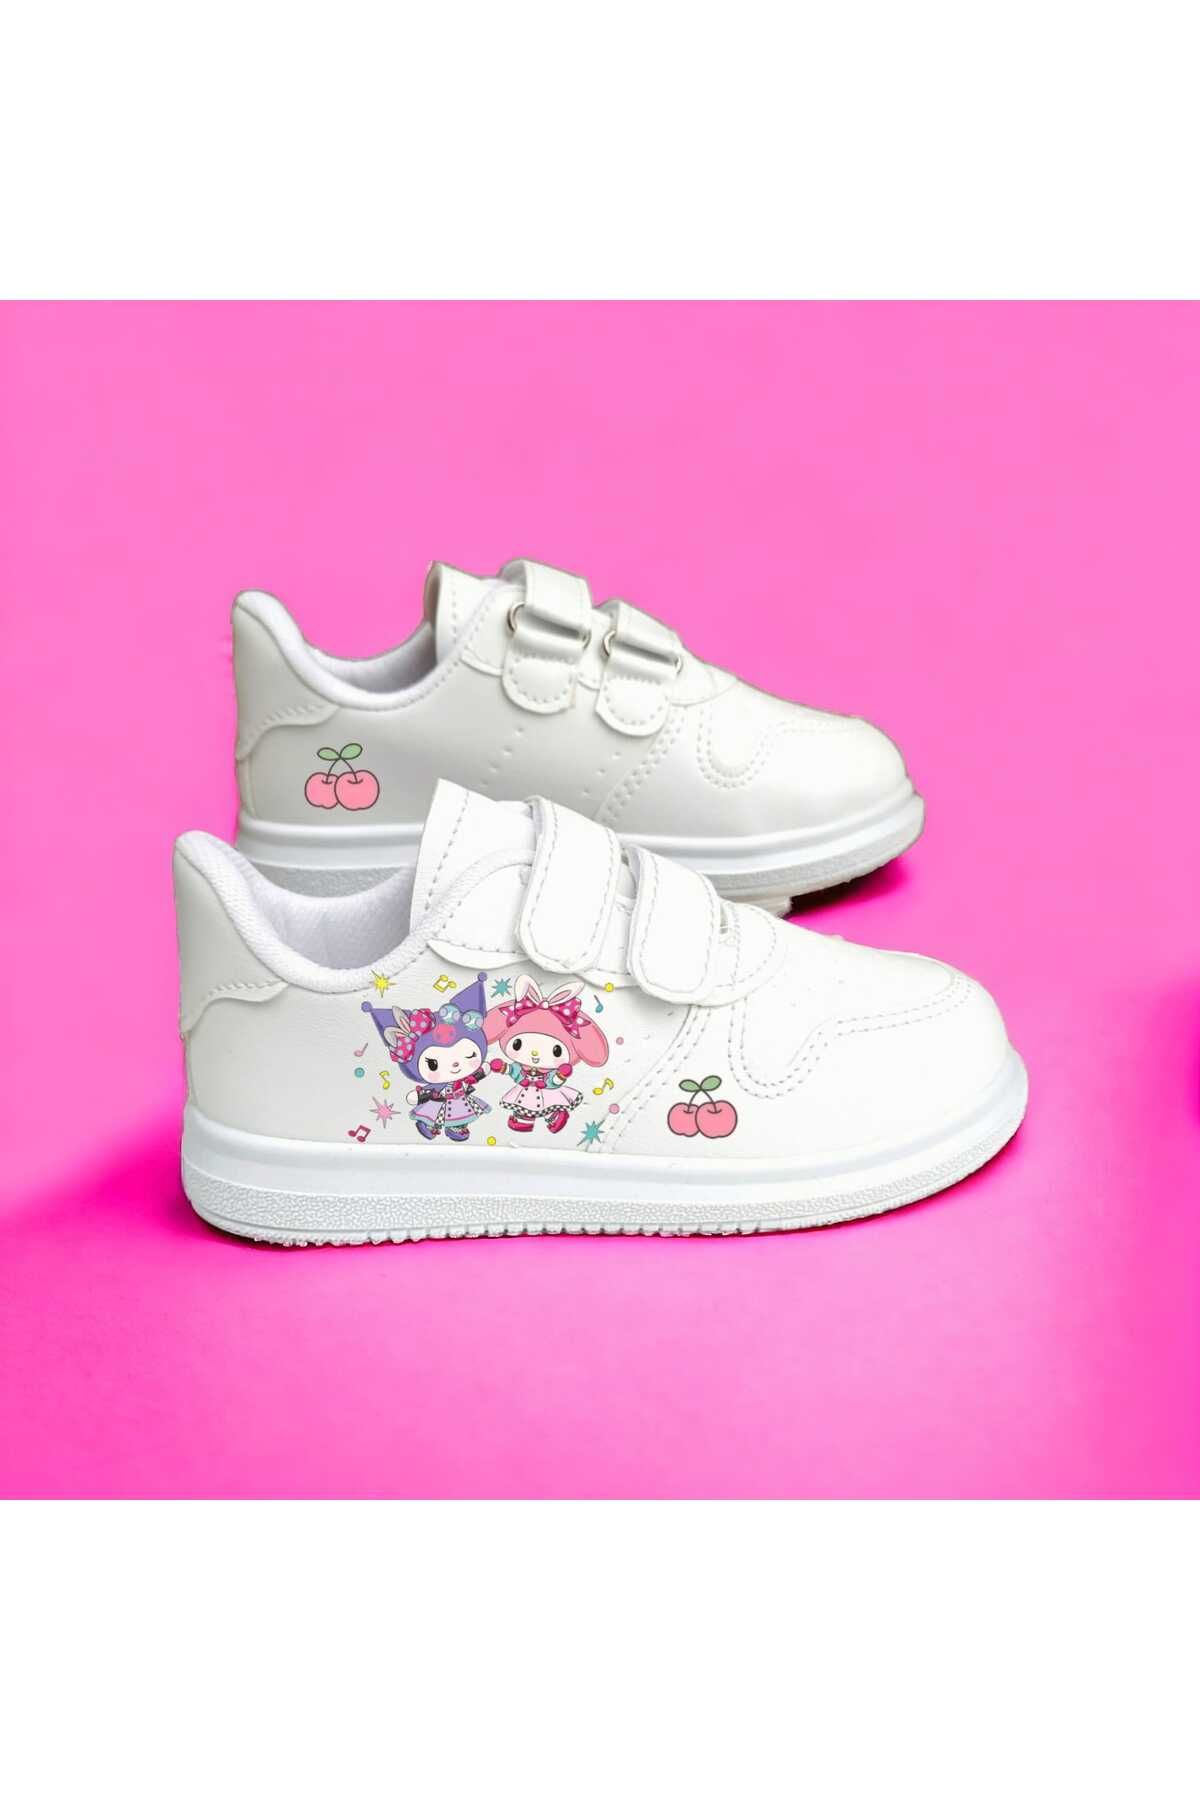 amazoondesing Tatlı Cute Cromi Melodi Baskılı Sneaker Kız Çocuk Spor Ayakkabı Hafif Dar Kalıp